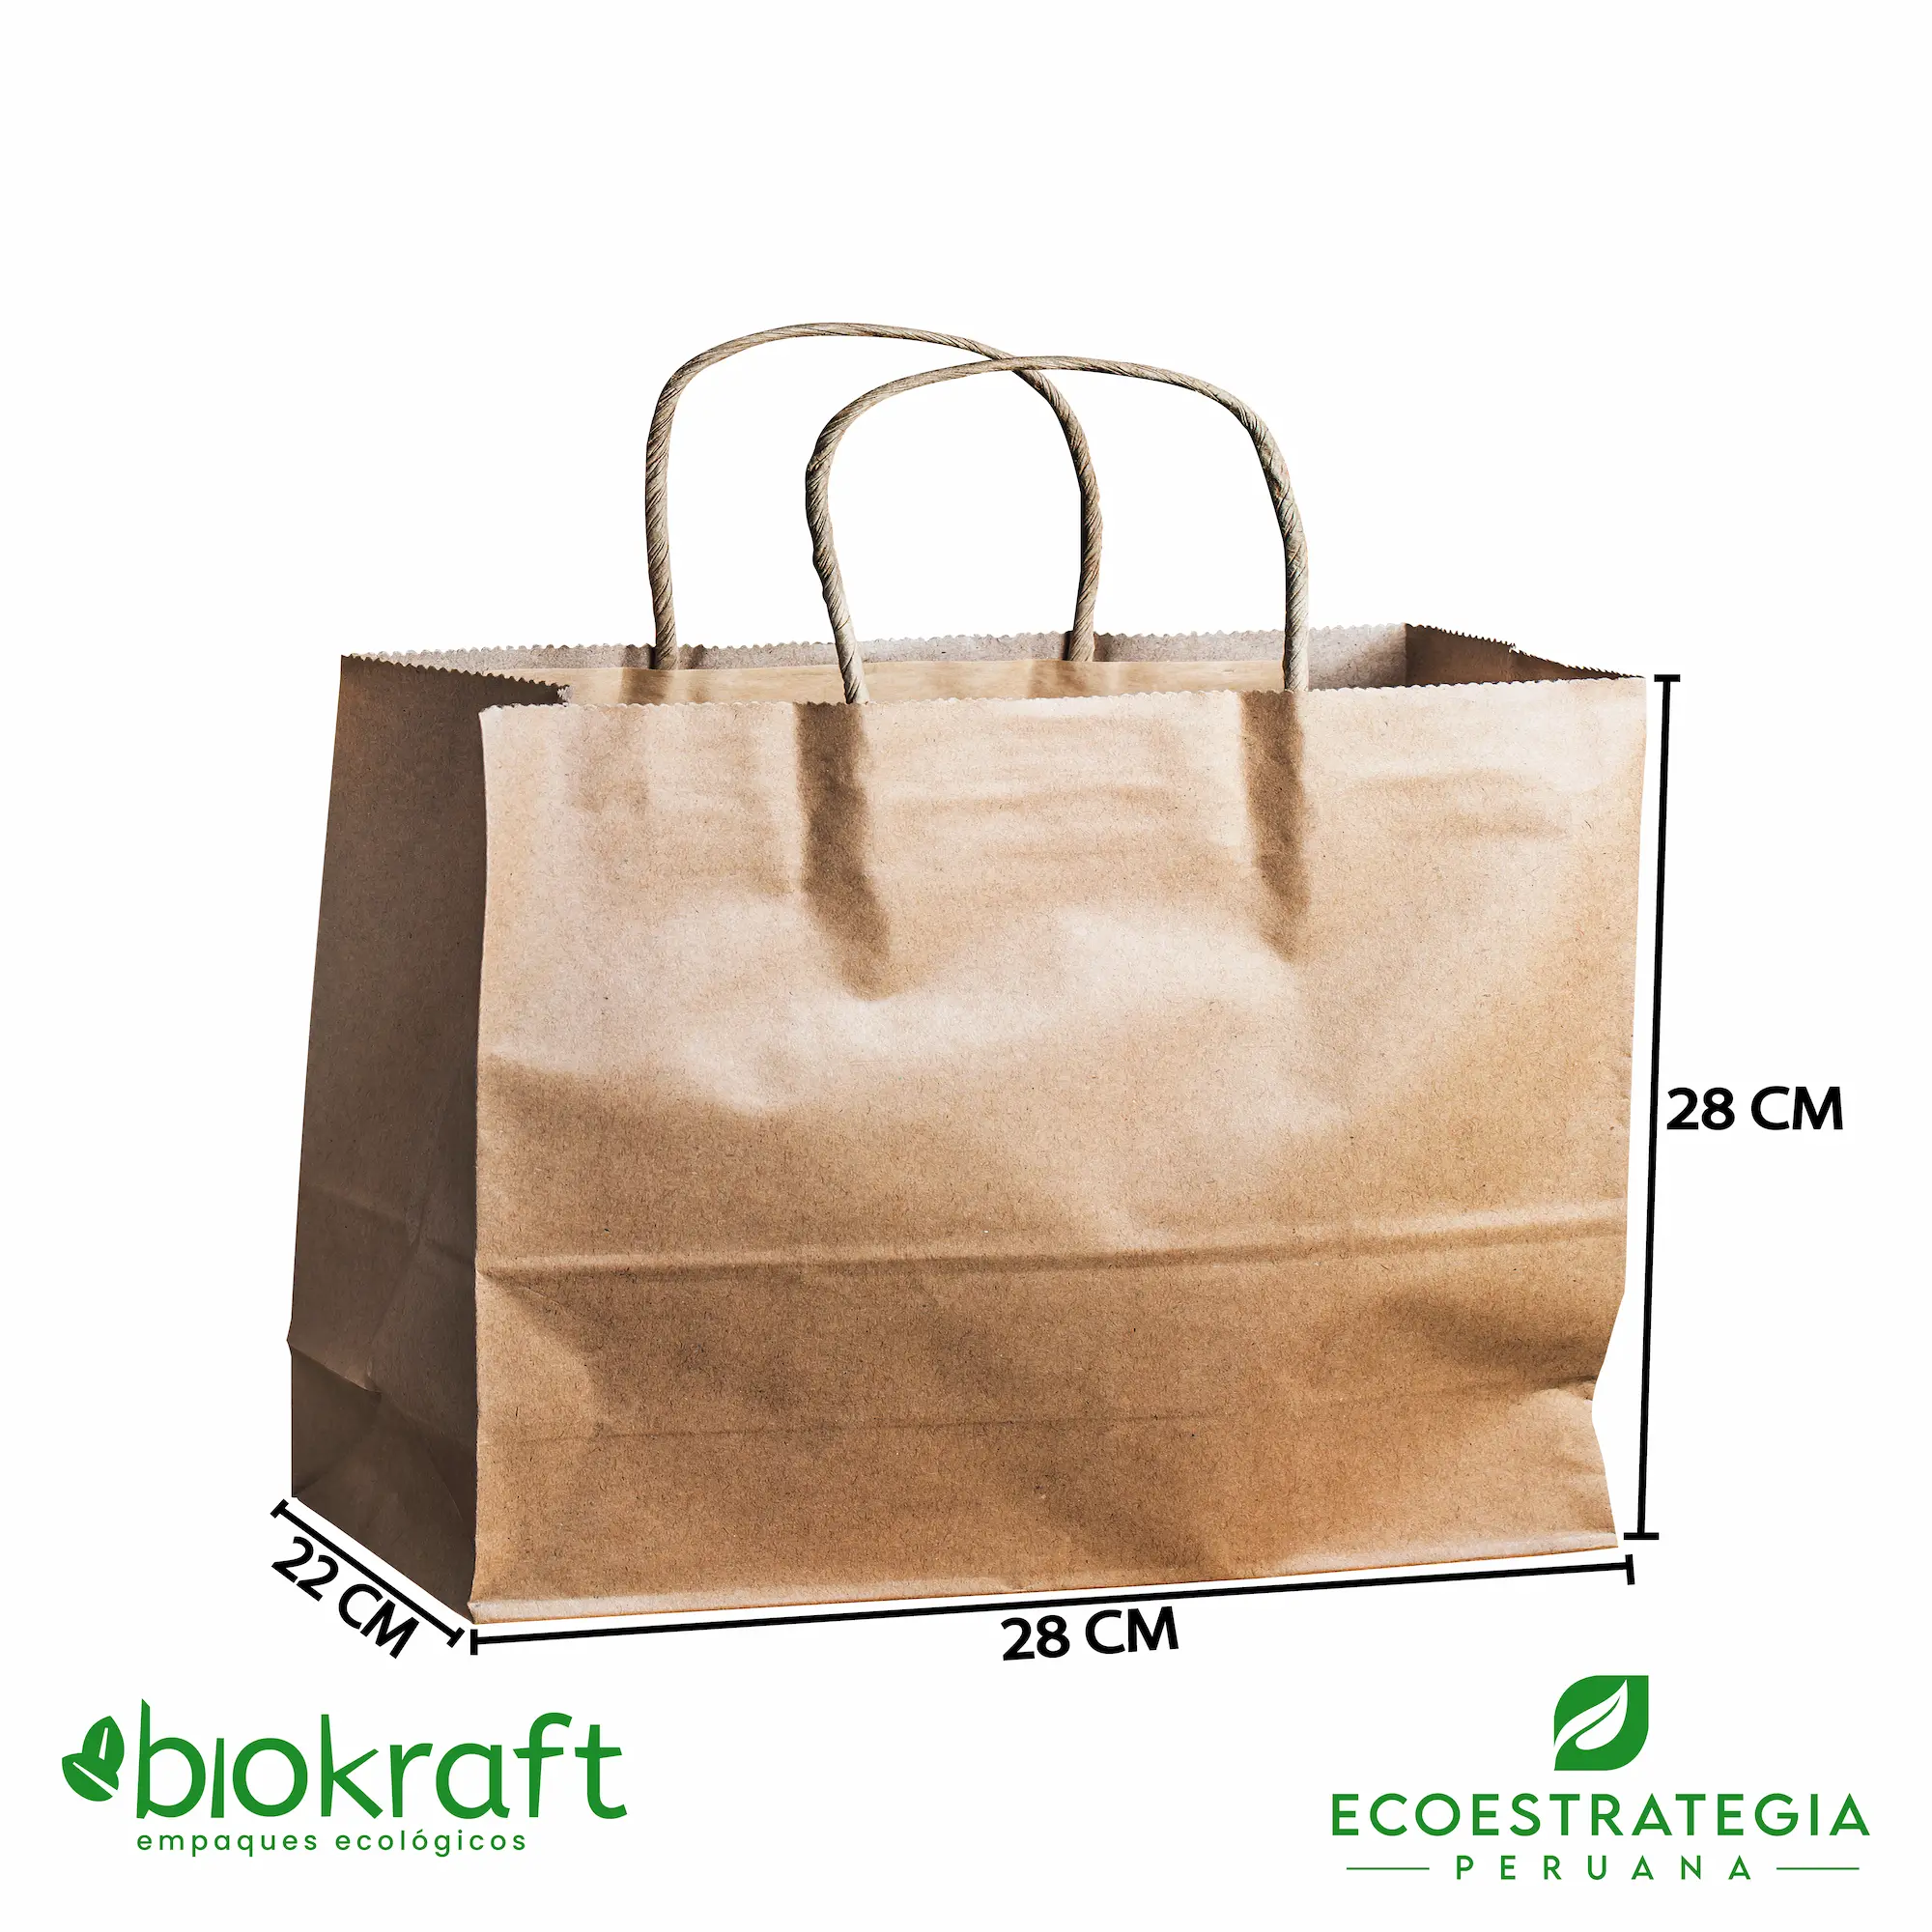 Esta bolsa de papel Kraft tiene un grosor de 80 gr. Bolsa biodegradable de excelente gramaje y medida, ideal para comidas y productos ligeros. Cotiza ahora tus bolsas Kraft con asa número 34